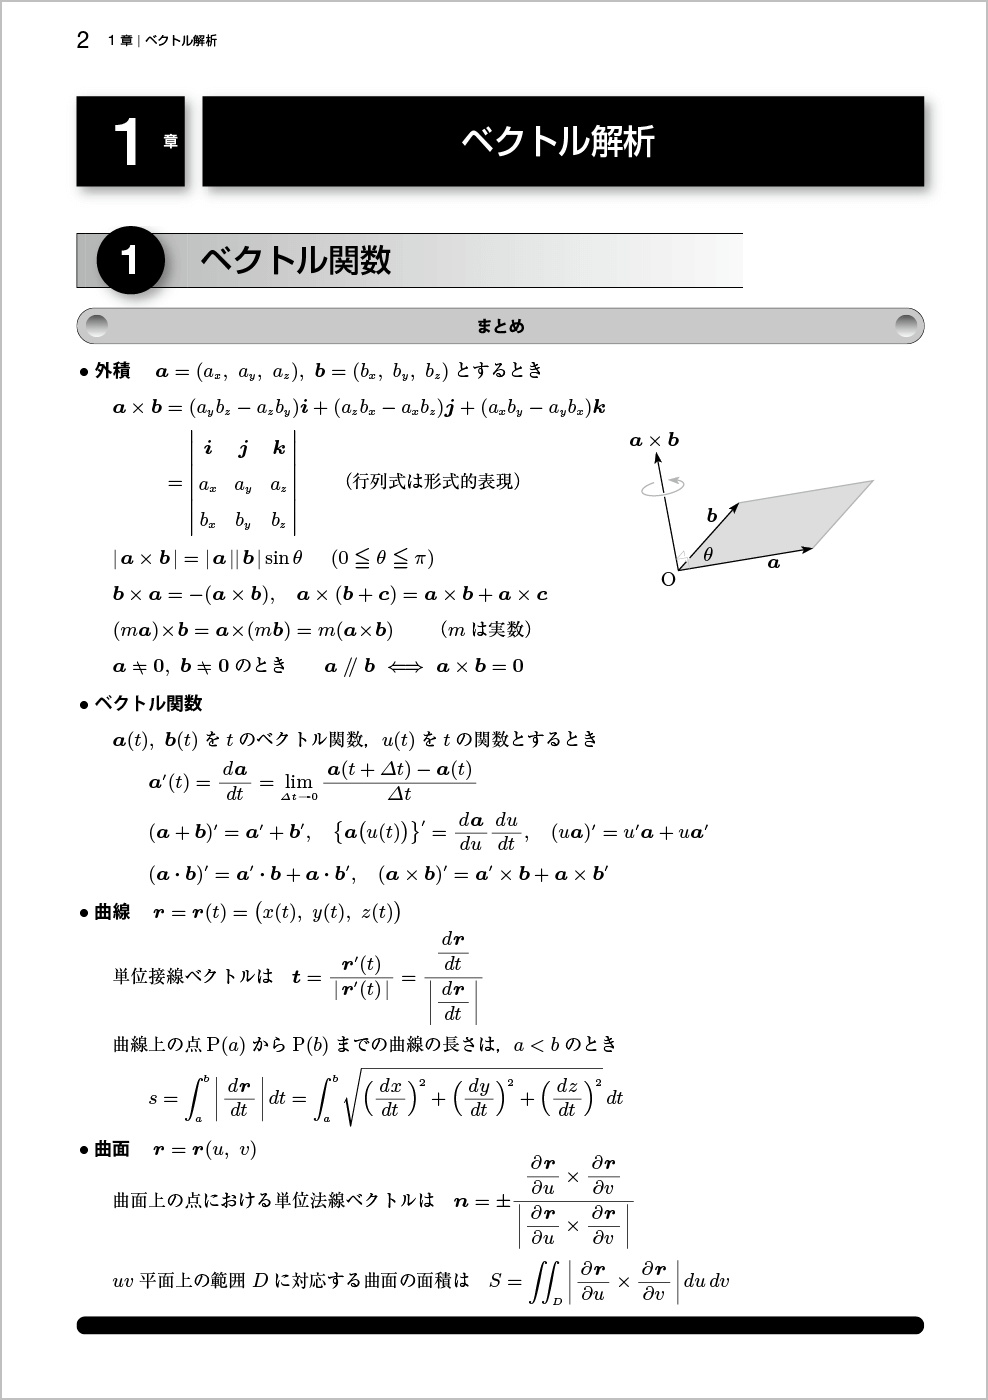 新応用数学問題集改訂版p.2